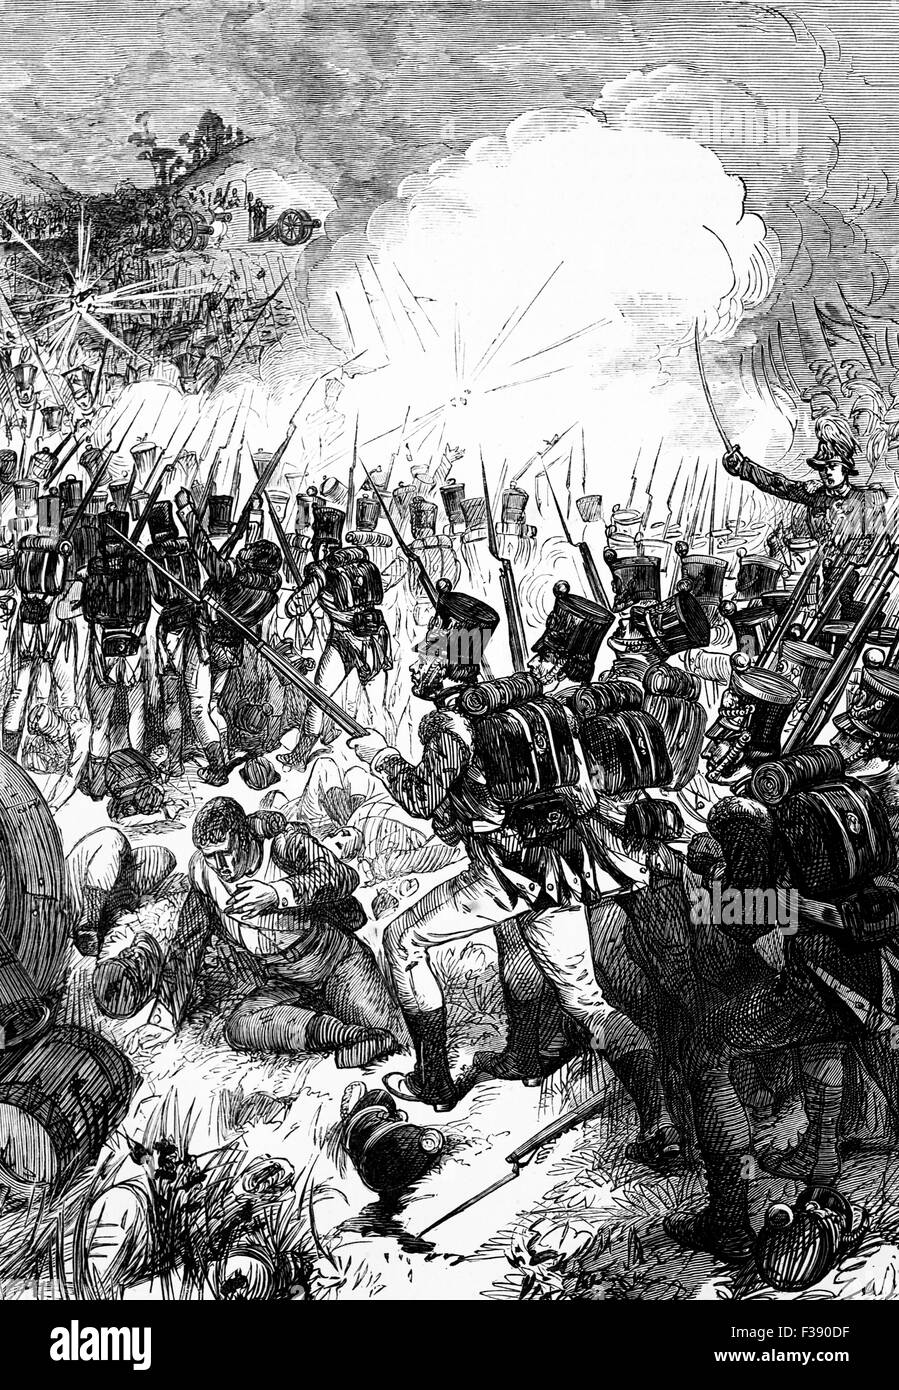 Die Schlacht von Albuera war eine unentschlossene Schlacht am 16. Mai 1811 während des Unabhängigkeitskrieges. Eine gemischte spanische engagiert britischen und portugiesischen Korps Elemente des französischen Armée du Midi etwa 20 Kilometer (12 Meile) südlich der Grenze Festungsstadt Badajoz, Spanien. Stockfoto